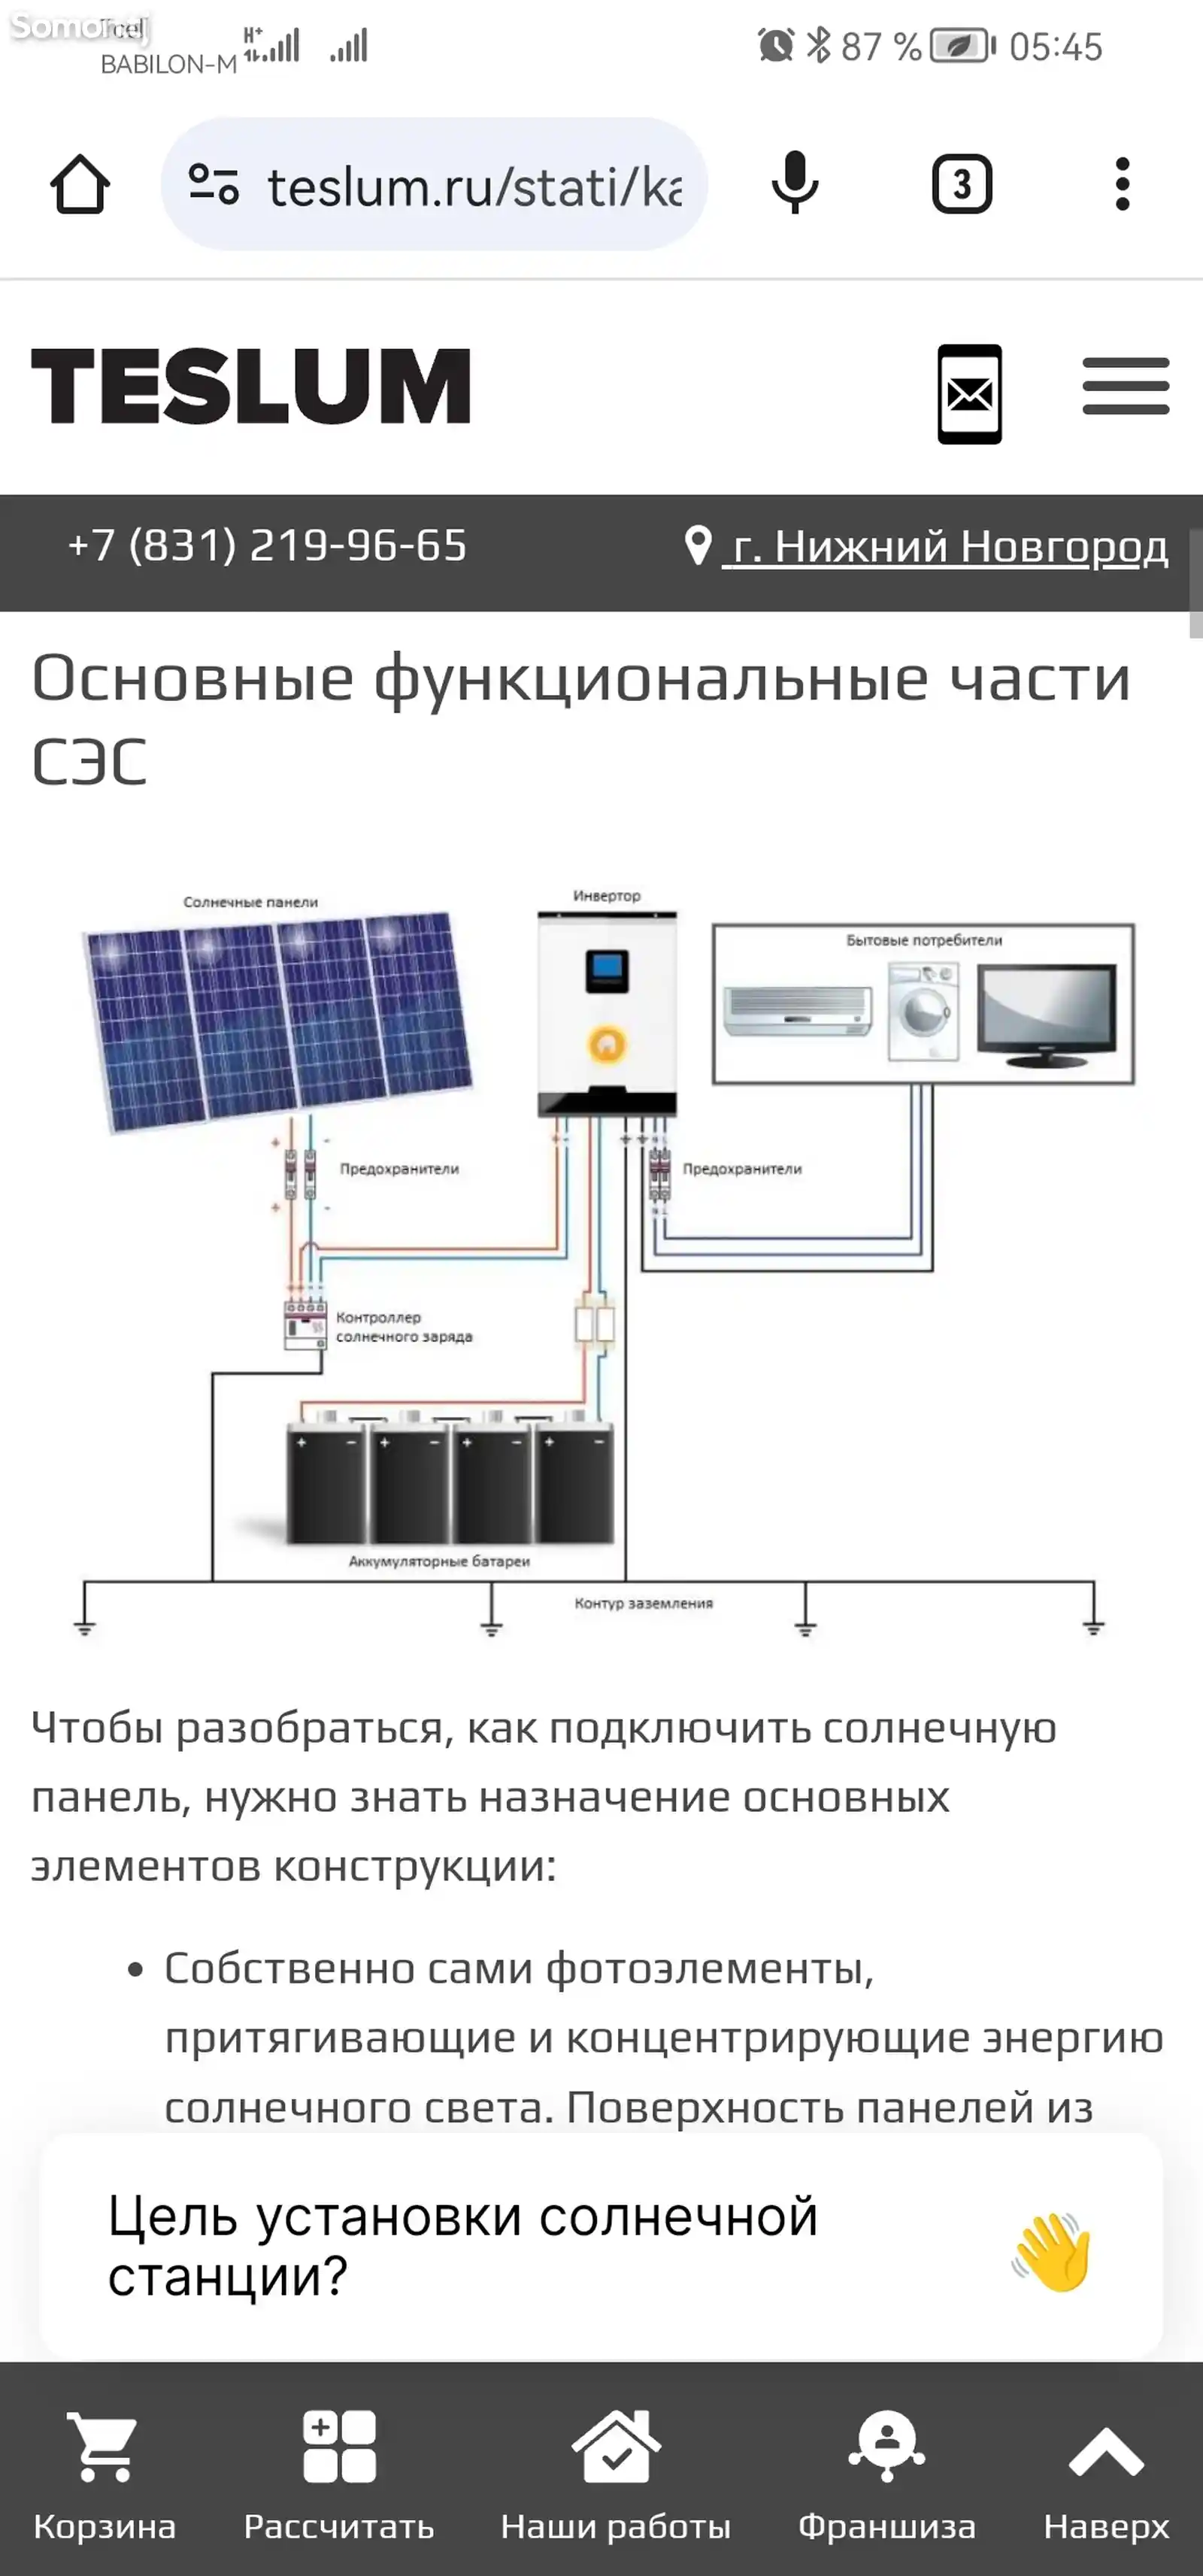 Услуги по установке солнечных панелей бо стандартхои Олмони-3